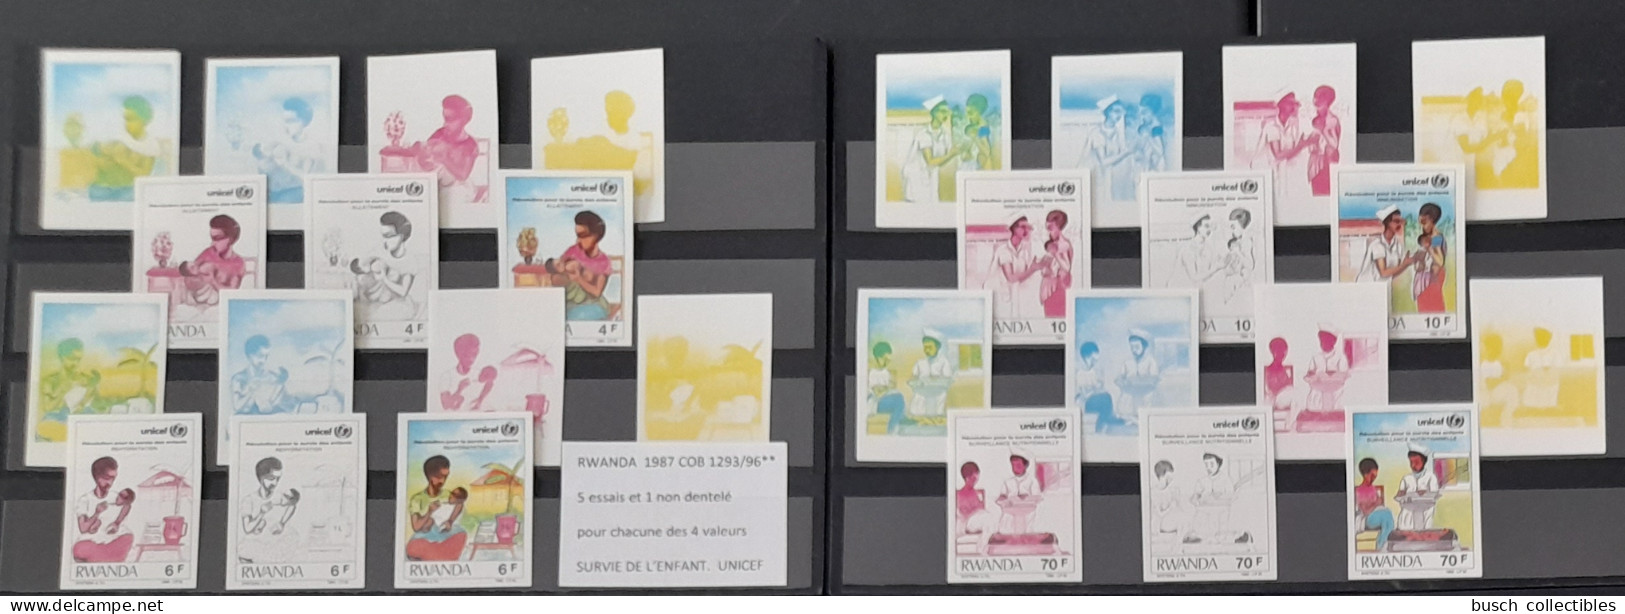 Rwanda 1987 COB 1293 - 1296 Color Proofs Essais Couleur IMPERF ND Révolution Pour Survie De L'Enfant UNICEF Child Kind - Ungebraucht